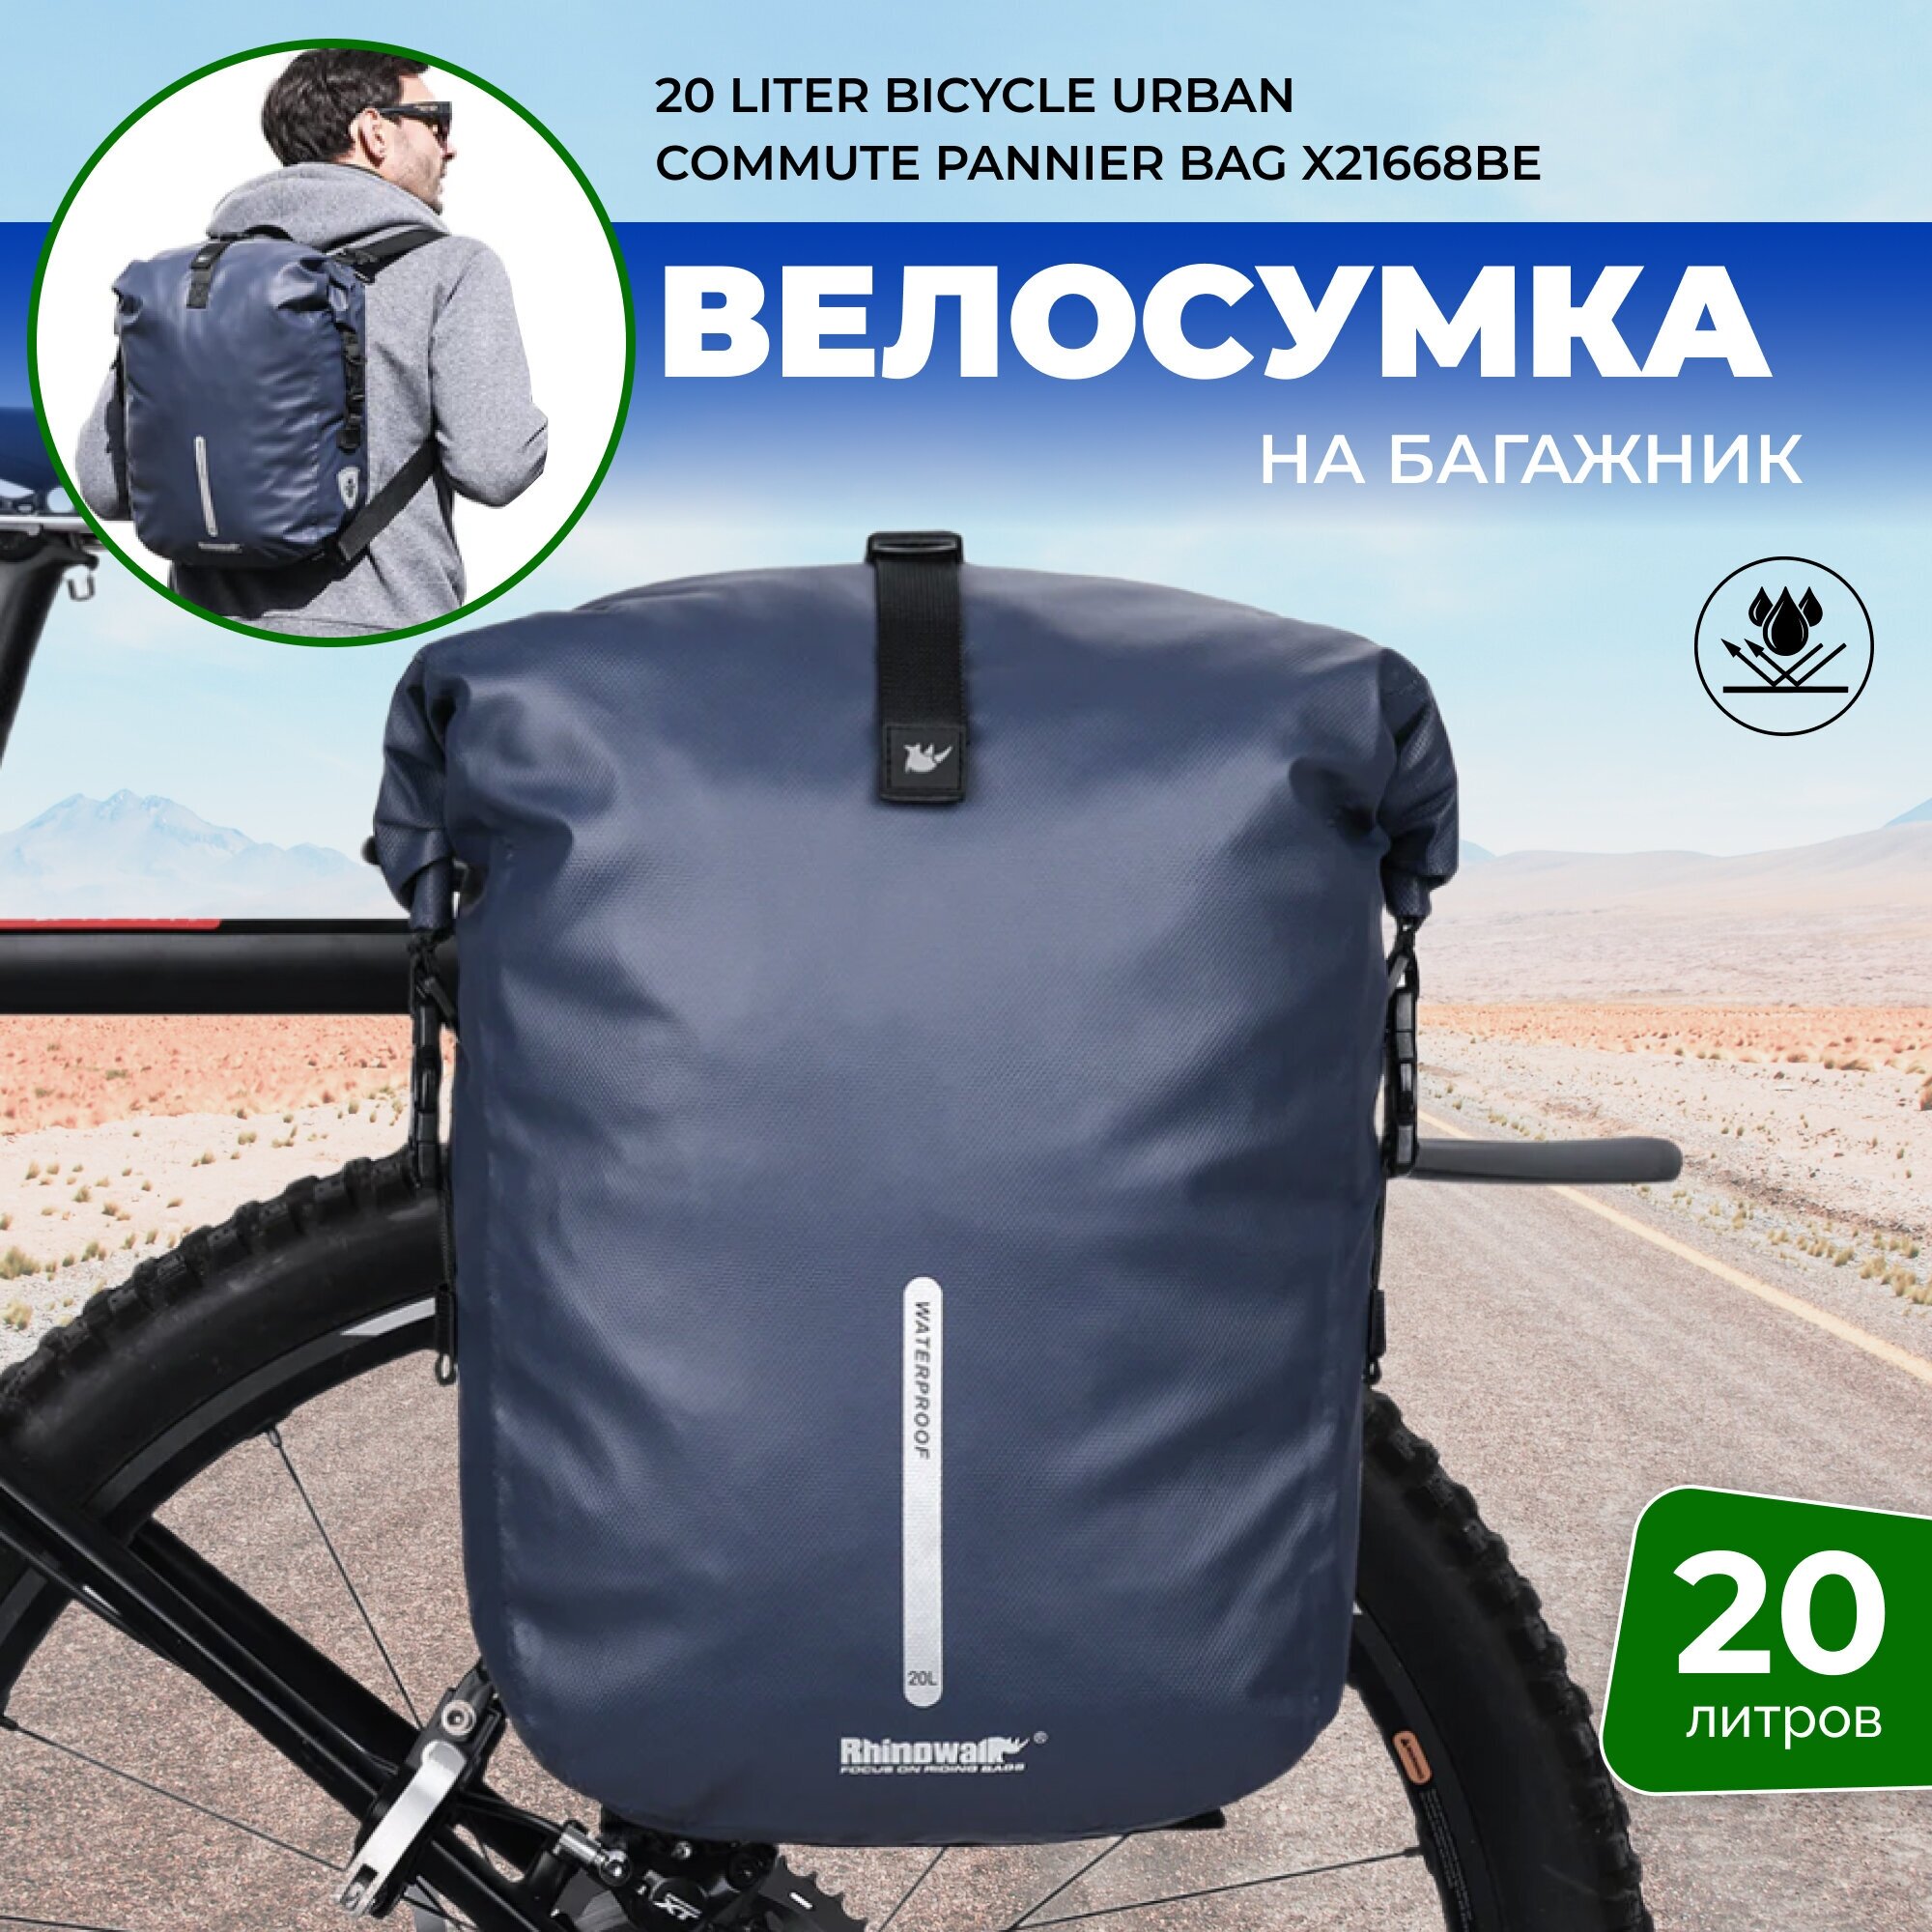 Сумка для велосипеда, многофункциональная сумка Rhinowalk X21668BE 20 литров